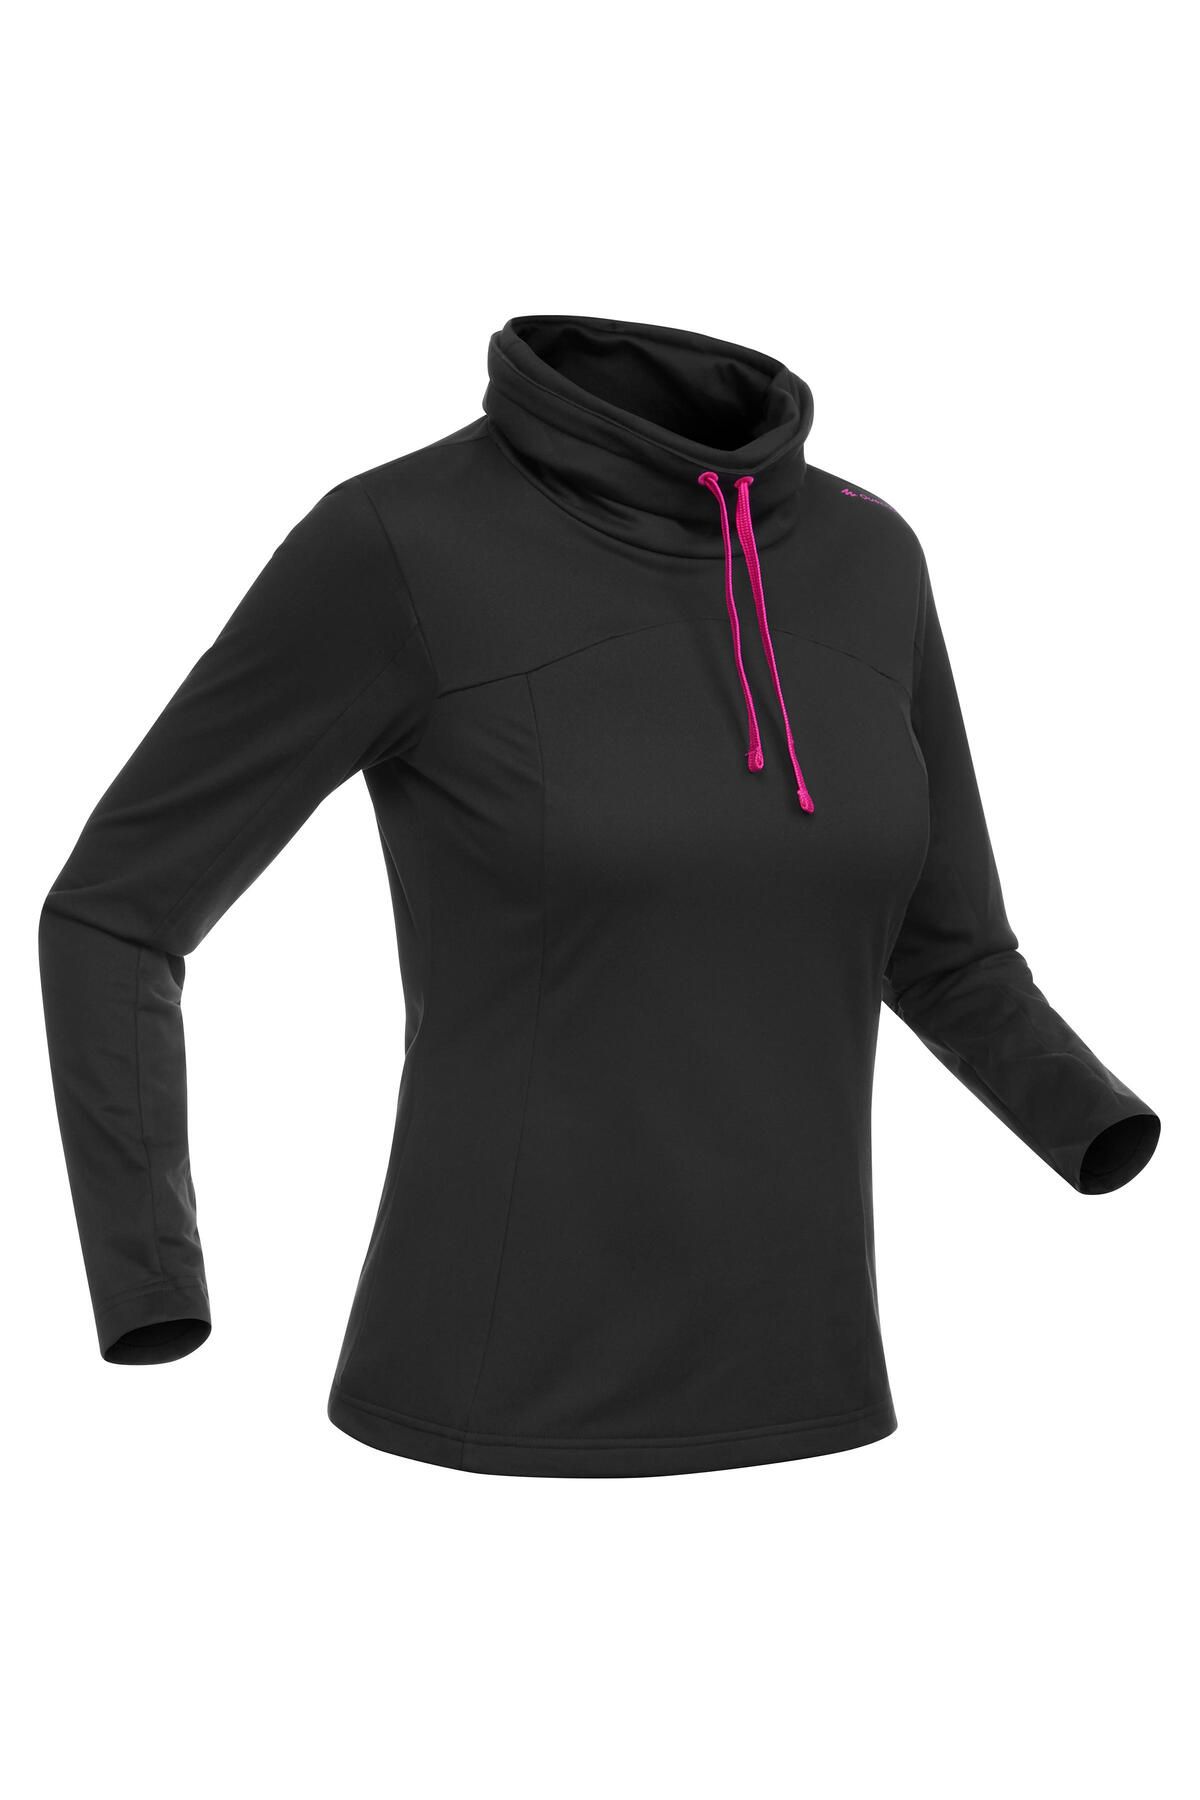 Decathlon Kadın Uzun Kollu Outdoor Tişört - Siyah - Sh100 Warm